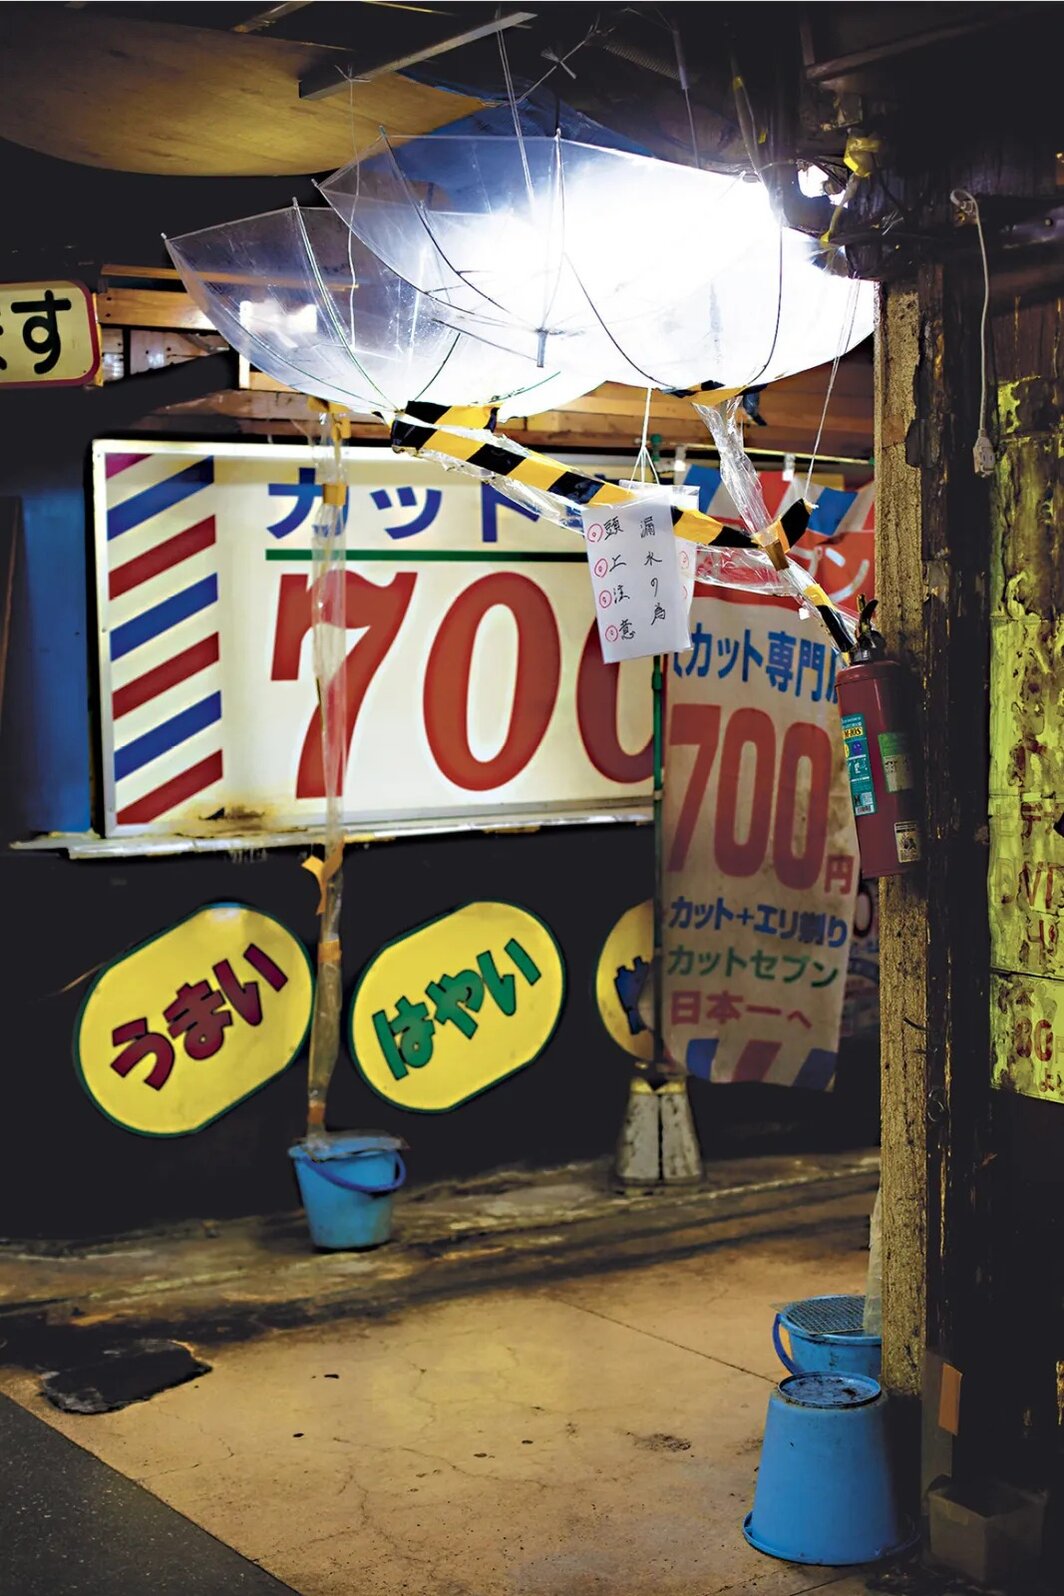 毛利悠子，《浅草站，2015年10月24日》，数码彩色冲印，42 3⁄8 ×29 1⁄8英寸. 出自“更多 更多 东京（渗漏的东京）：实地考察”，2009-21.